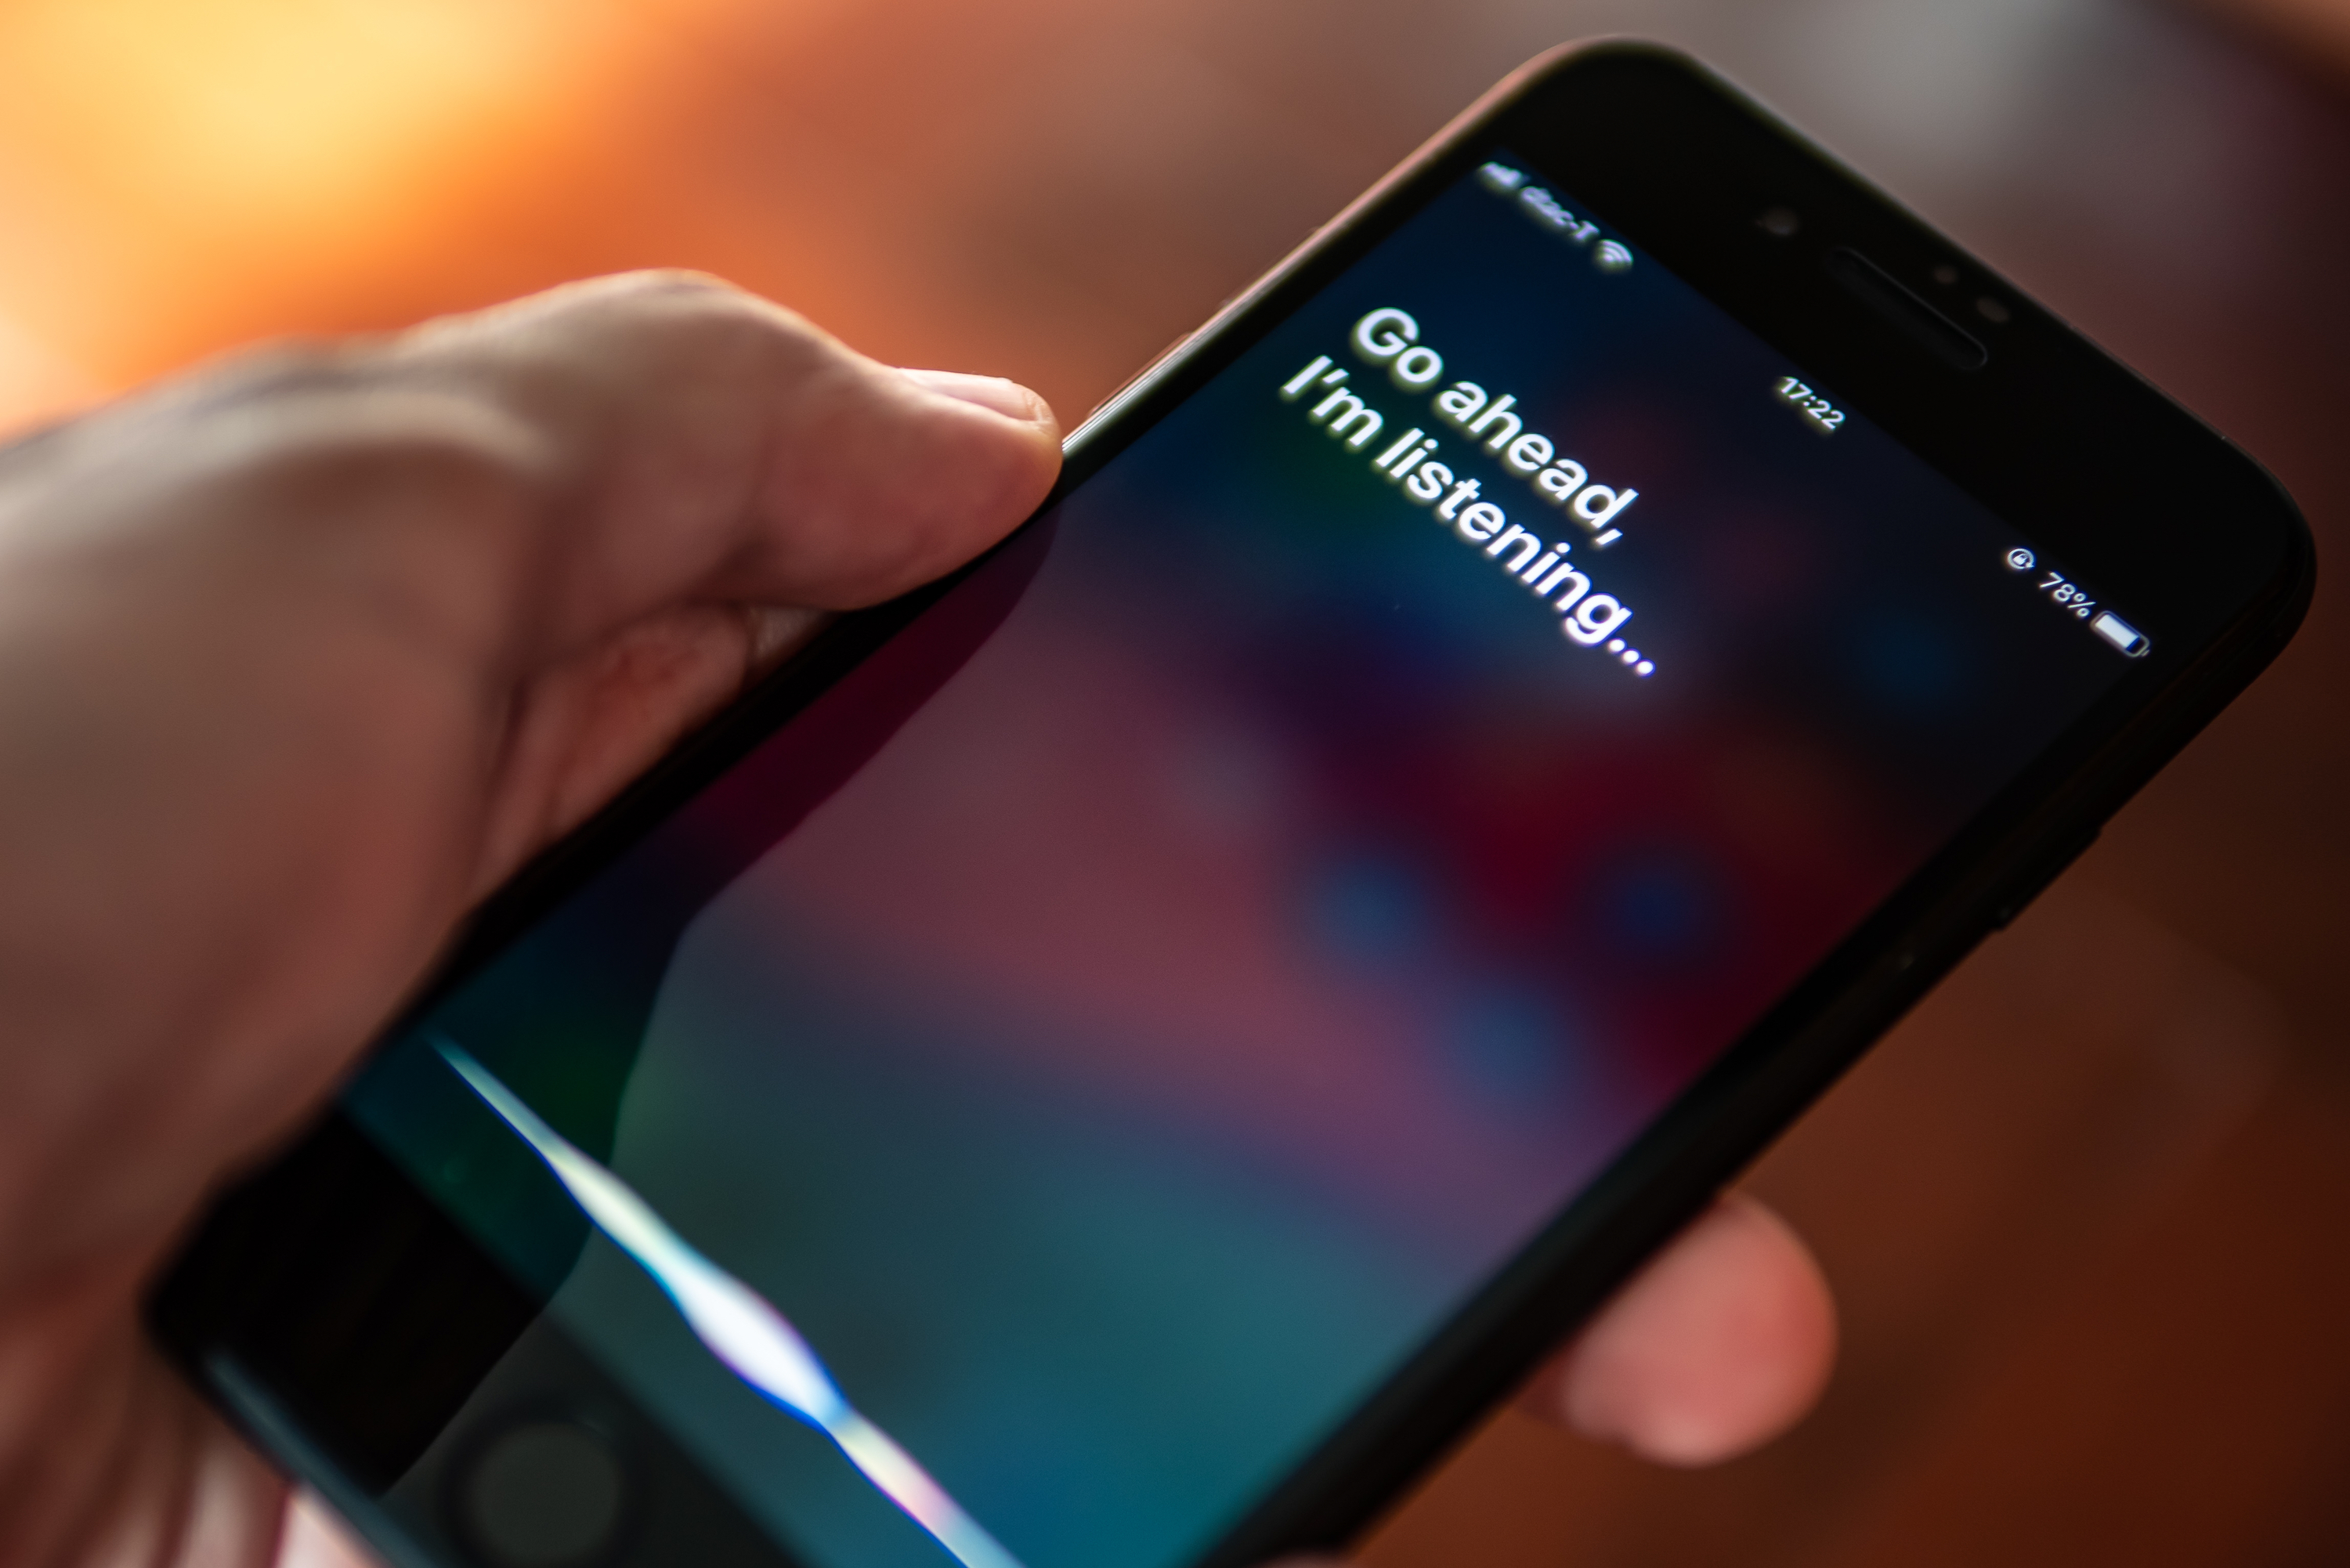 Se rumorea que el chatbot con IA ‘Apple GPT’ competirá con los grandes rivales tecnológicos